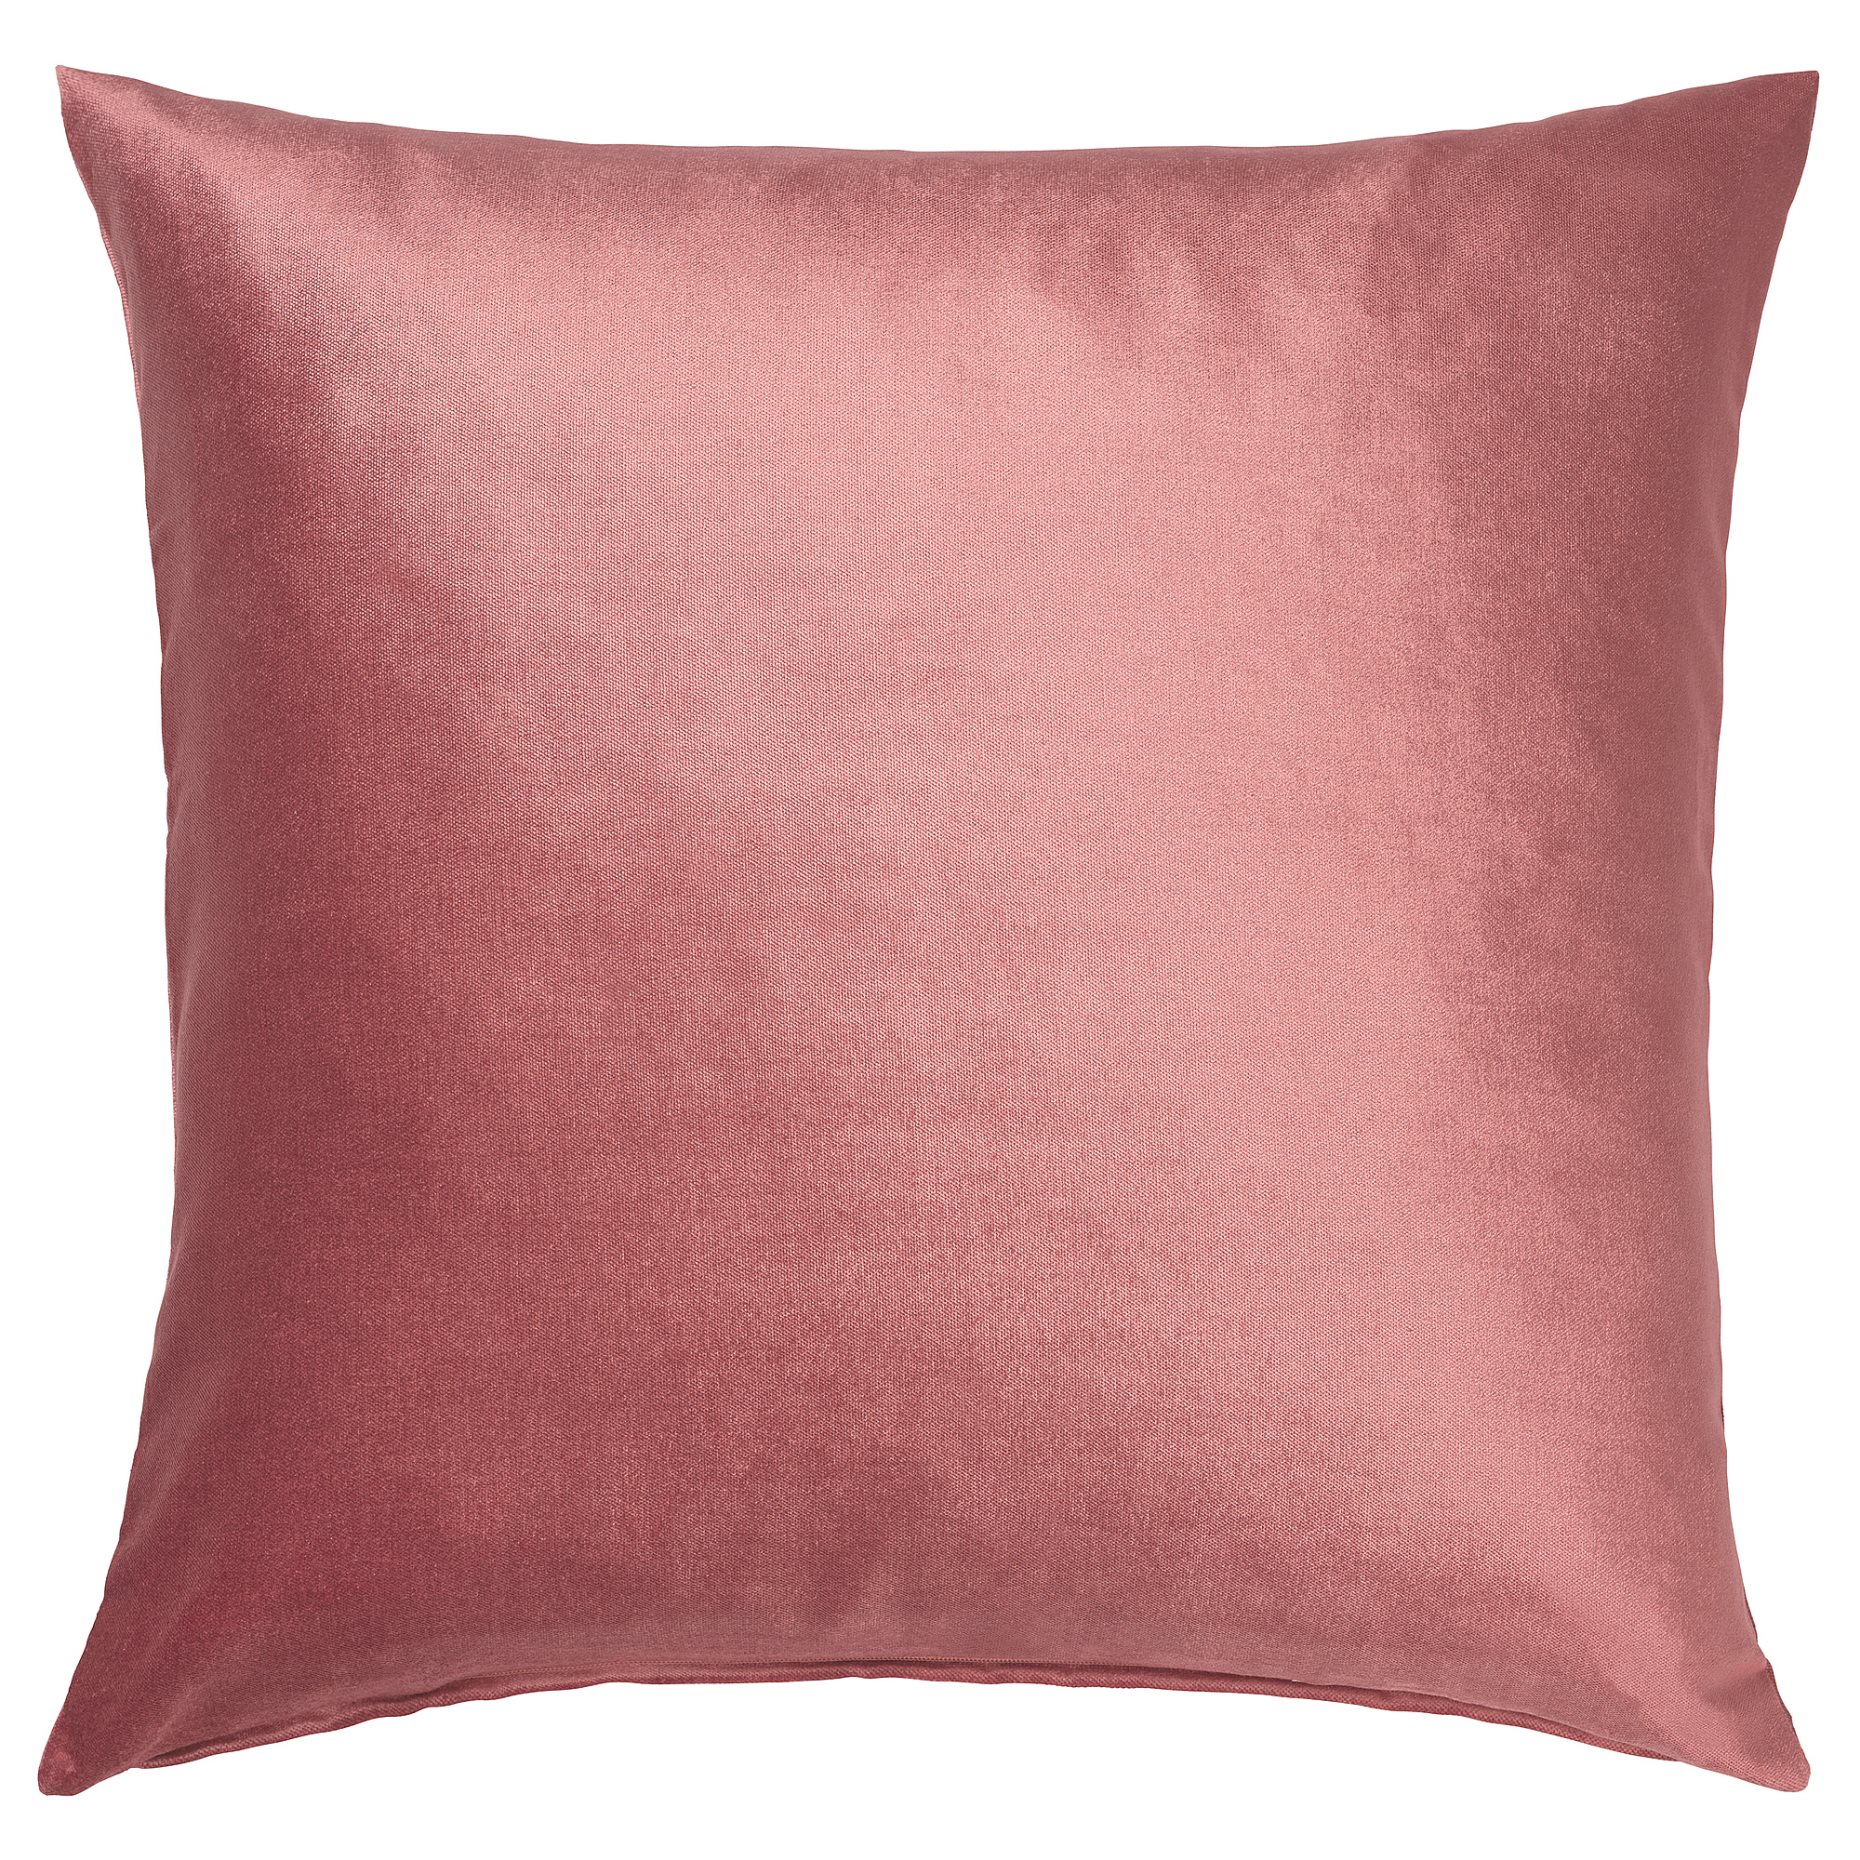 LAPPVIDE, cushion cover, 50x50 cm, 404.961.93